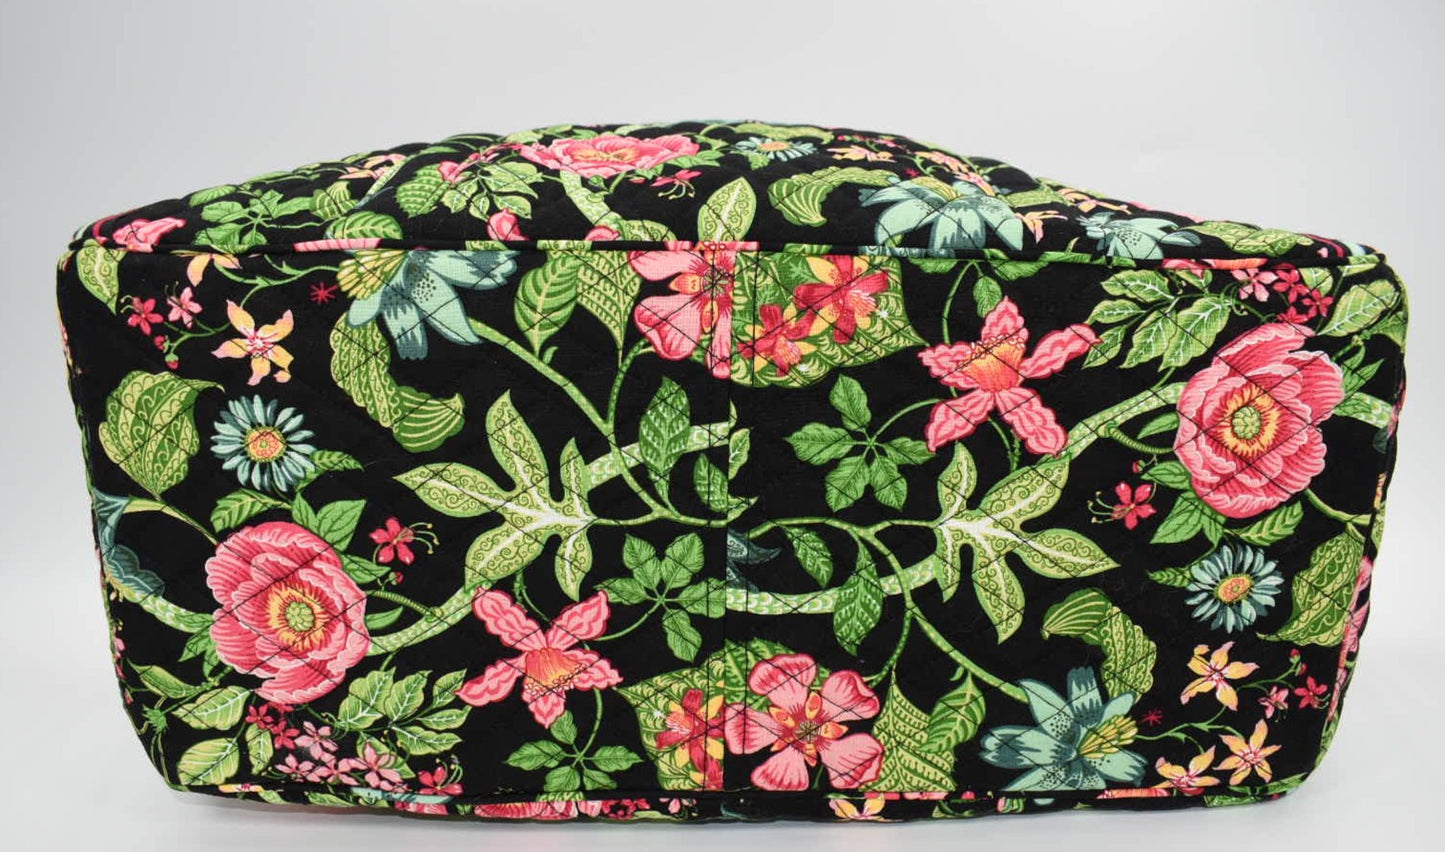 Vera Bradley Get Carried Away Tote Bag in "Botanica" Pattern